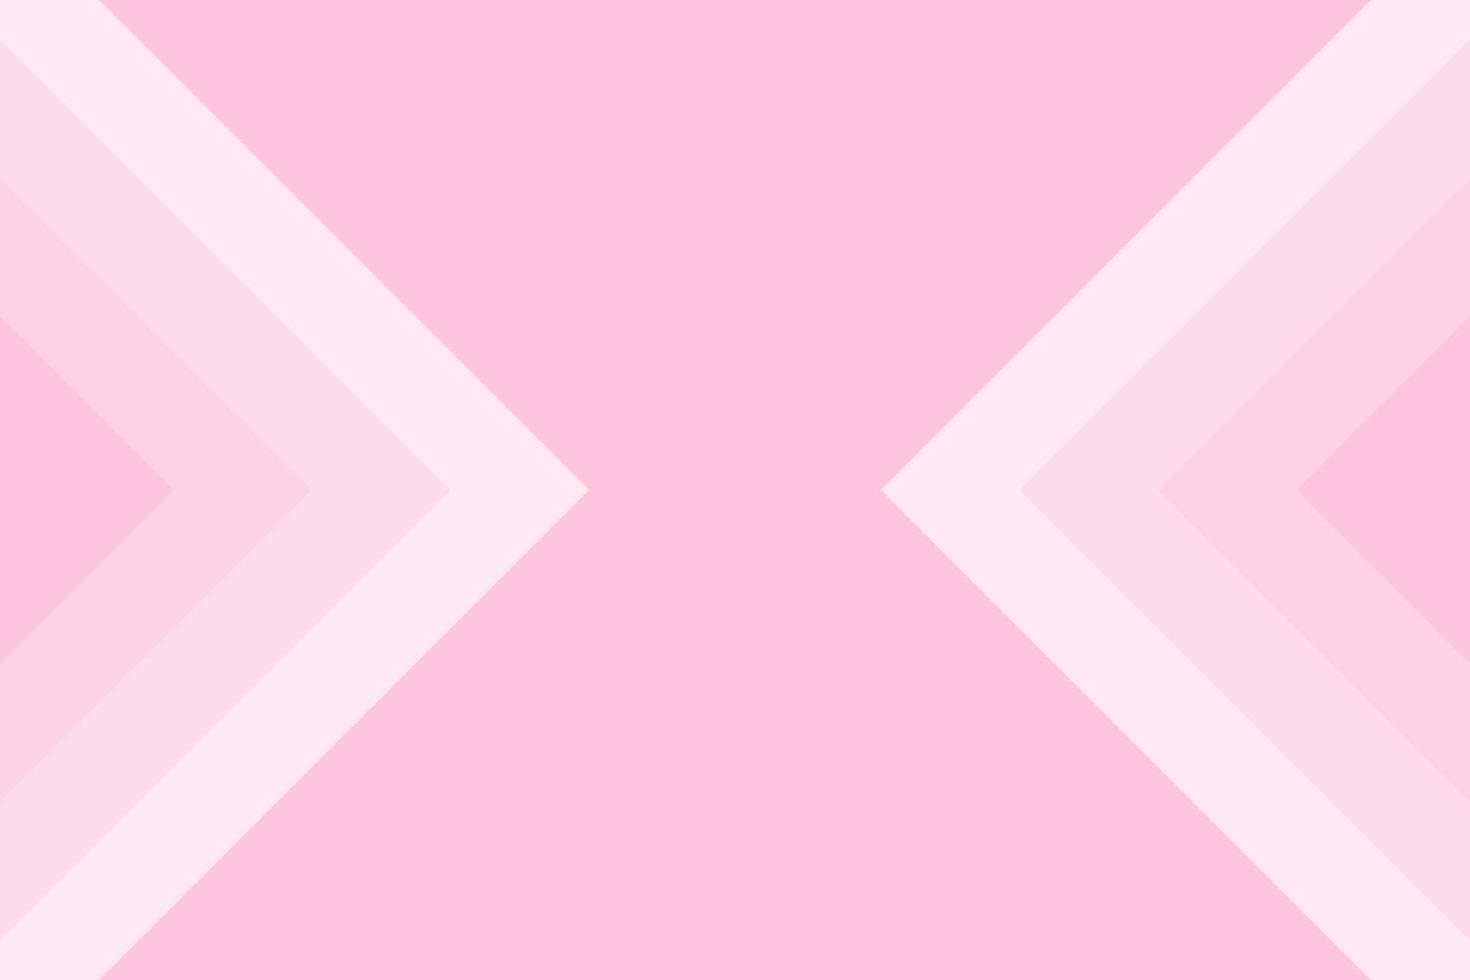 abstrakt bakgrundsvektor med pastellfärger kombination av mjuk rosa för kvinnor dag och påsk händelse vektor